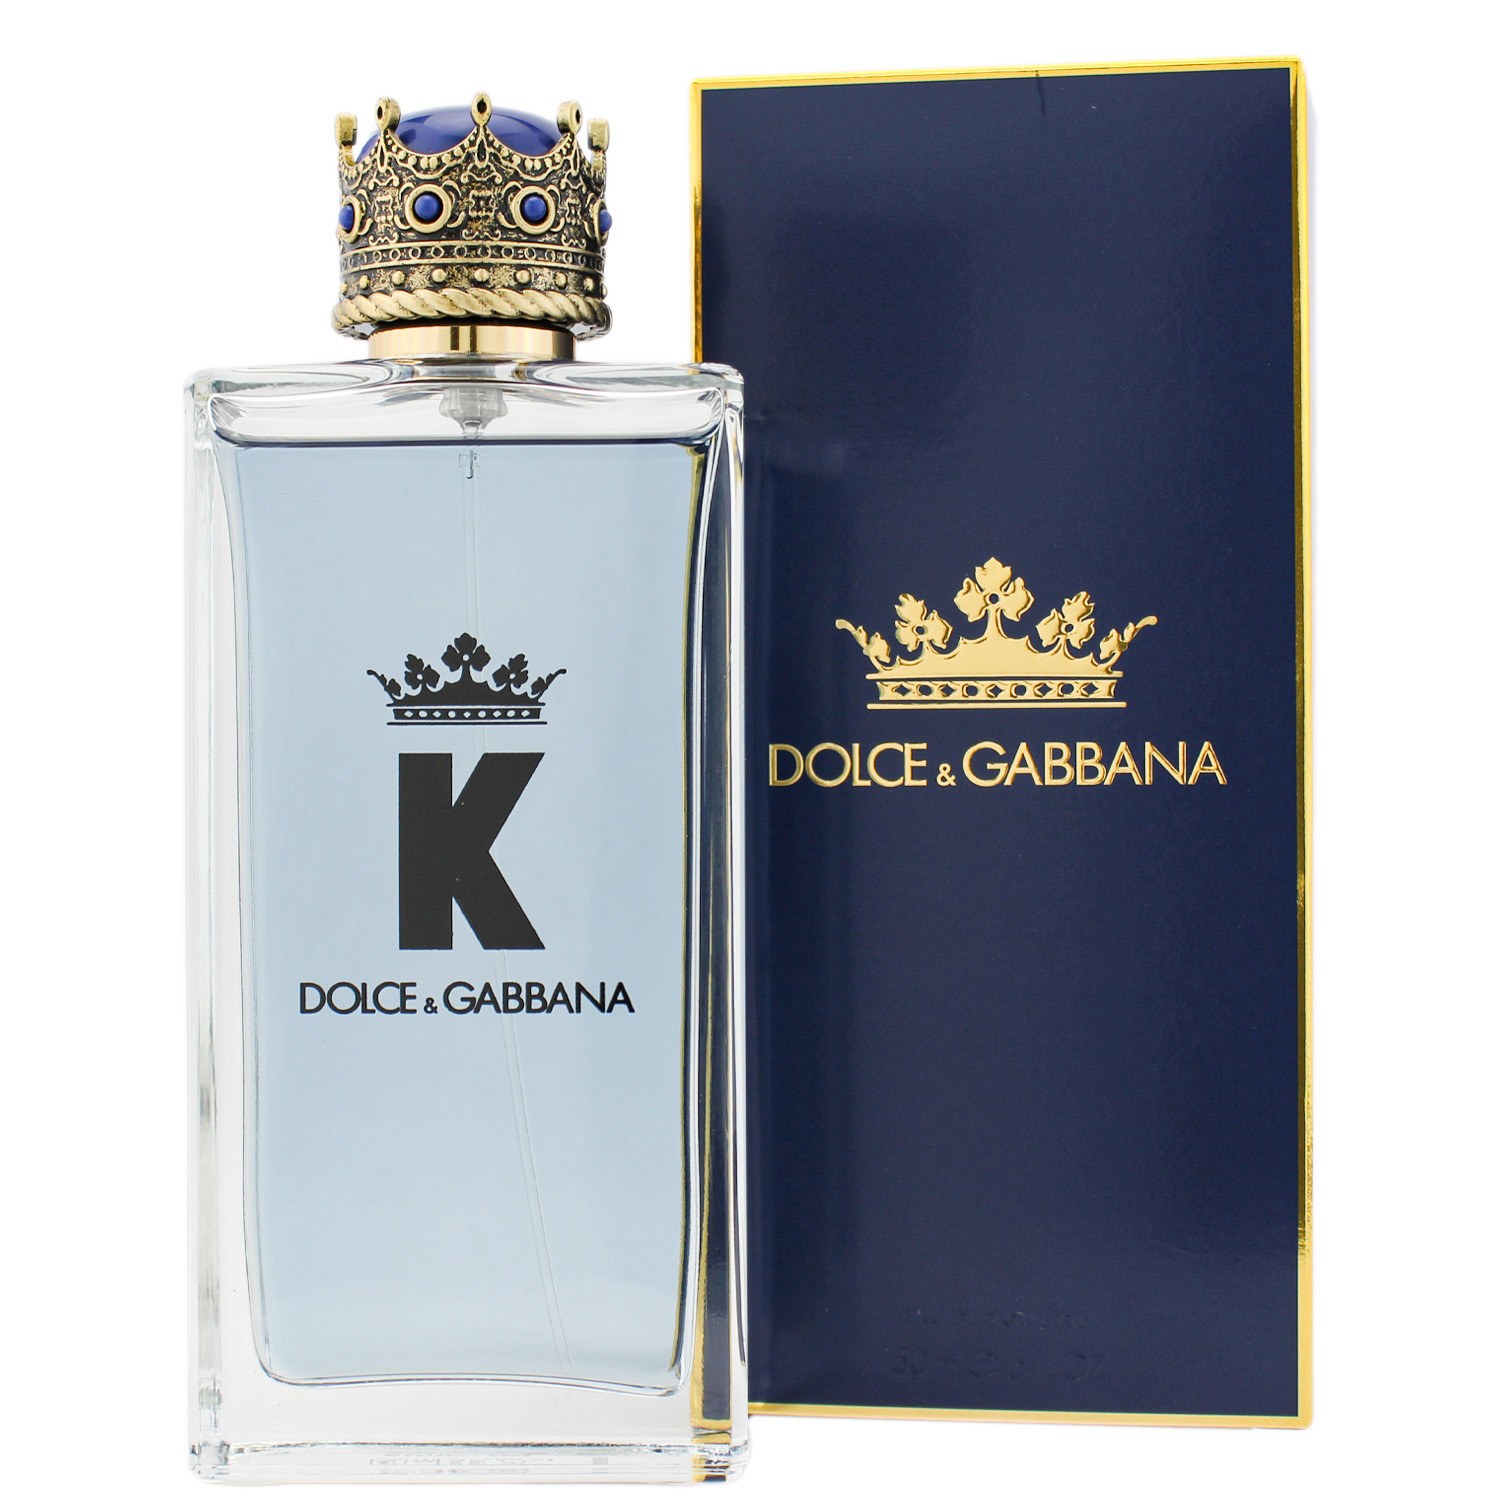 Dolce & Gabbana K by Dolce & Gabbana Eau de Toilette 100ml